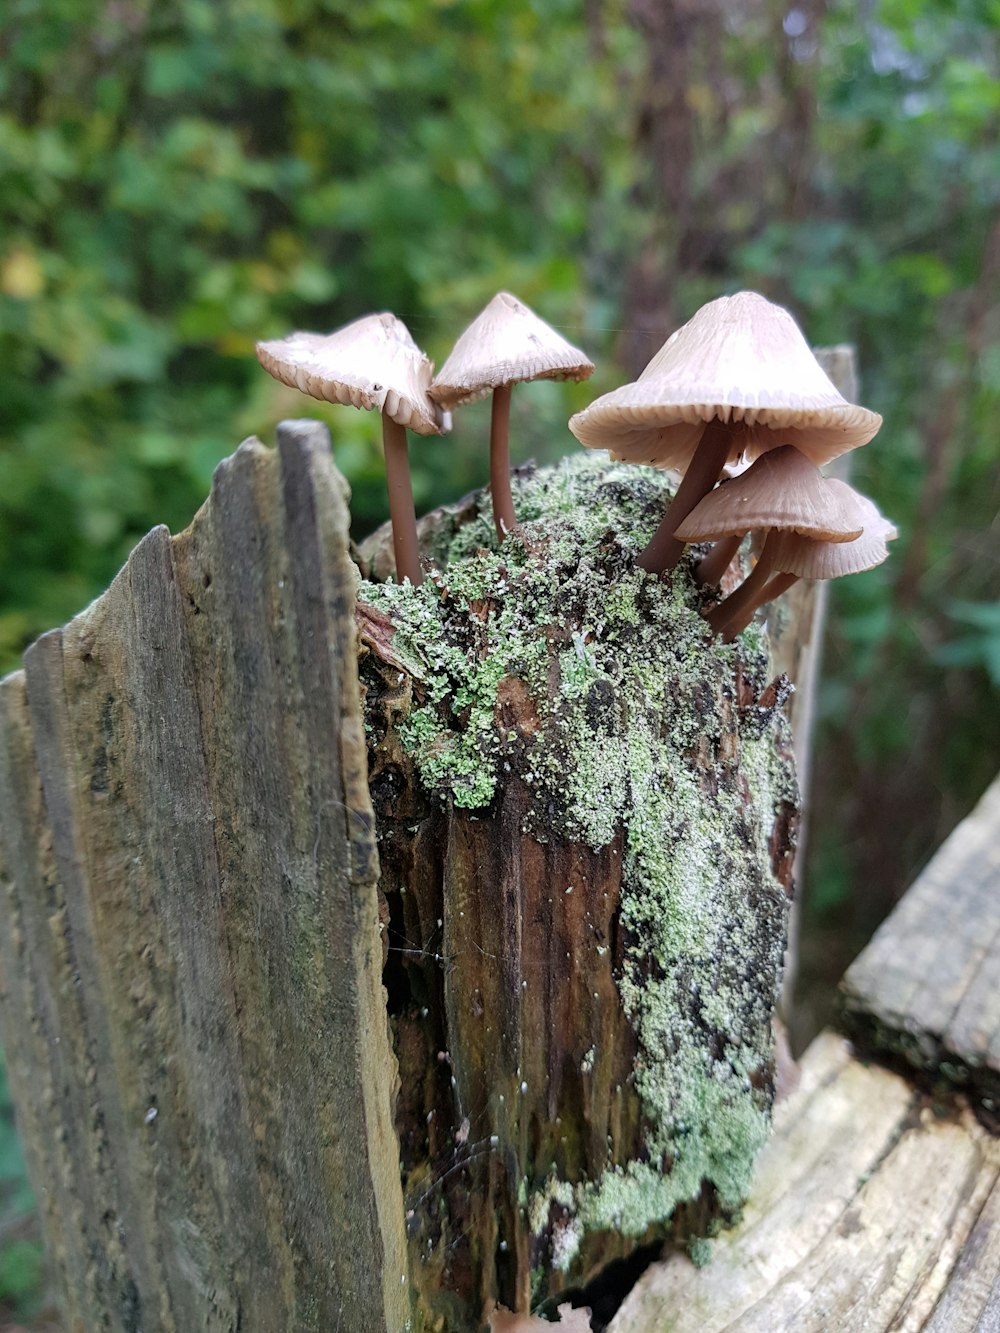 Cinque funghi marroni crescevano su un tronco di legno marrone